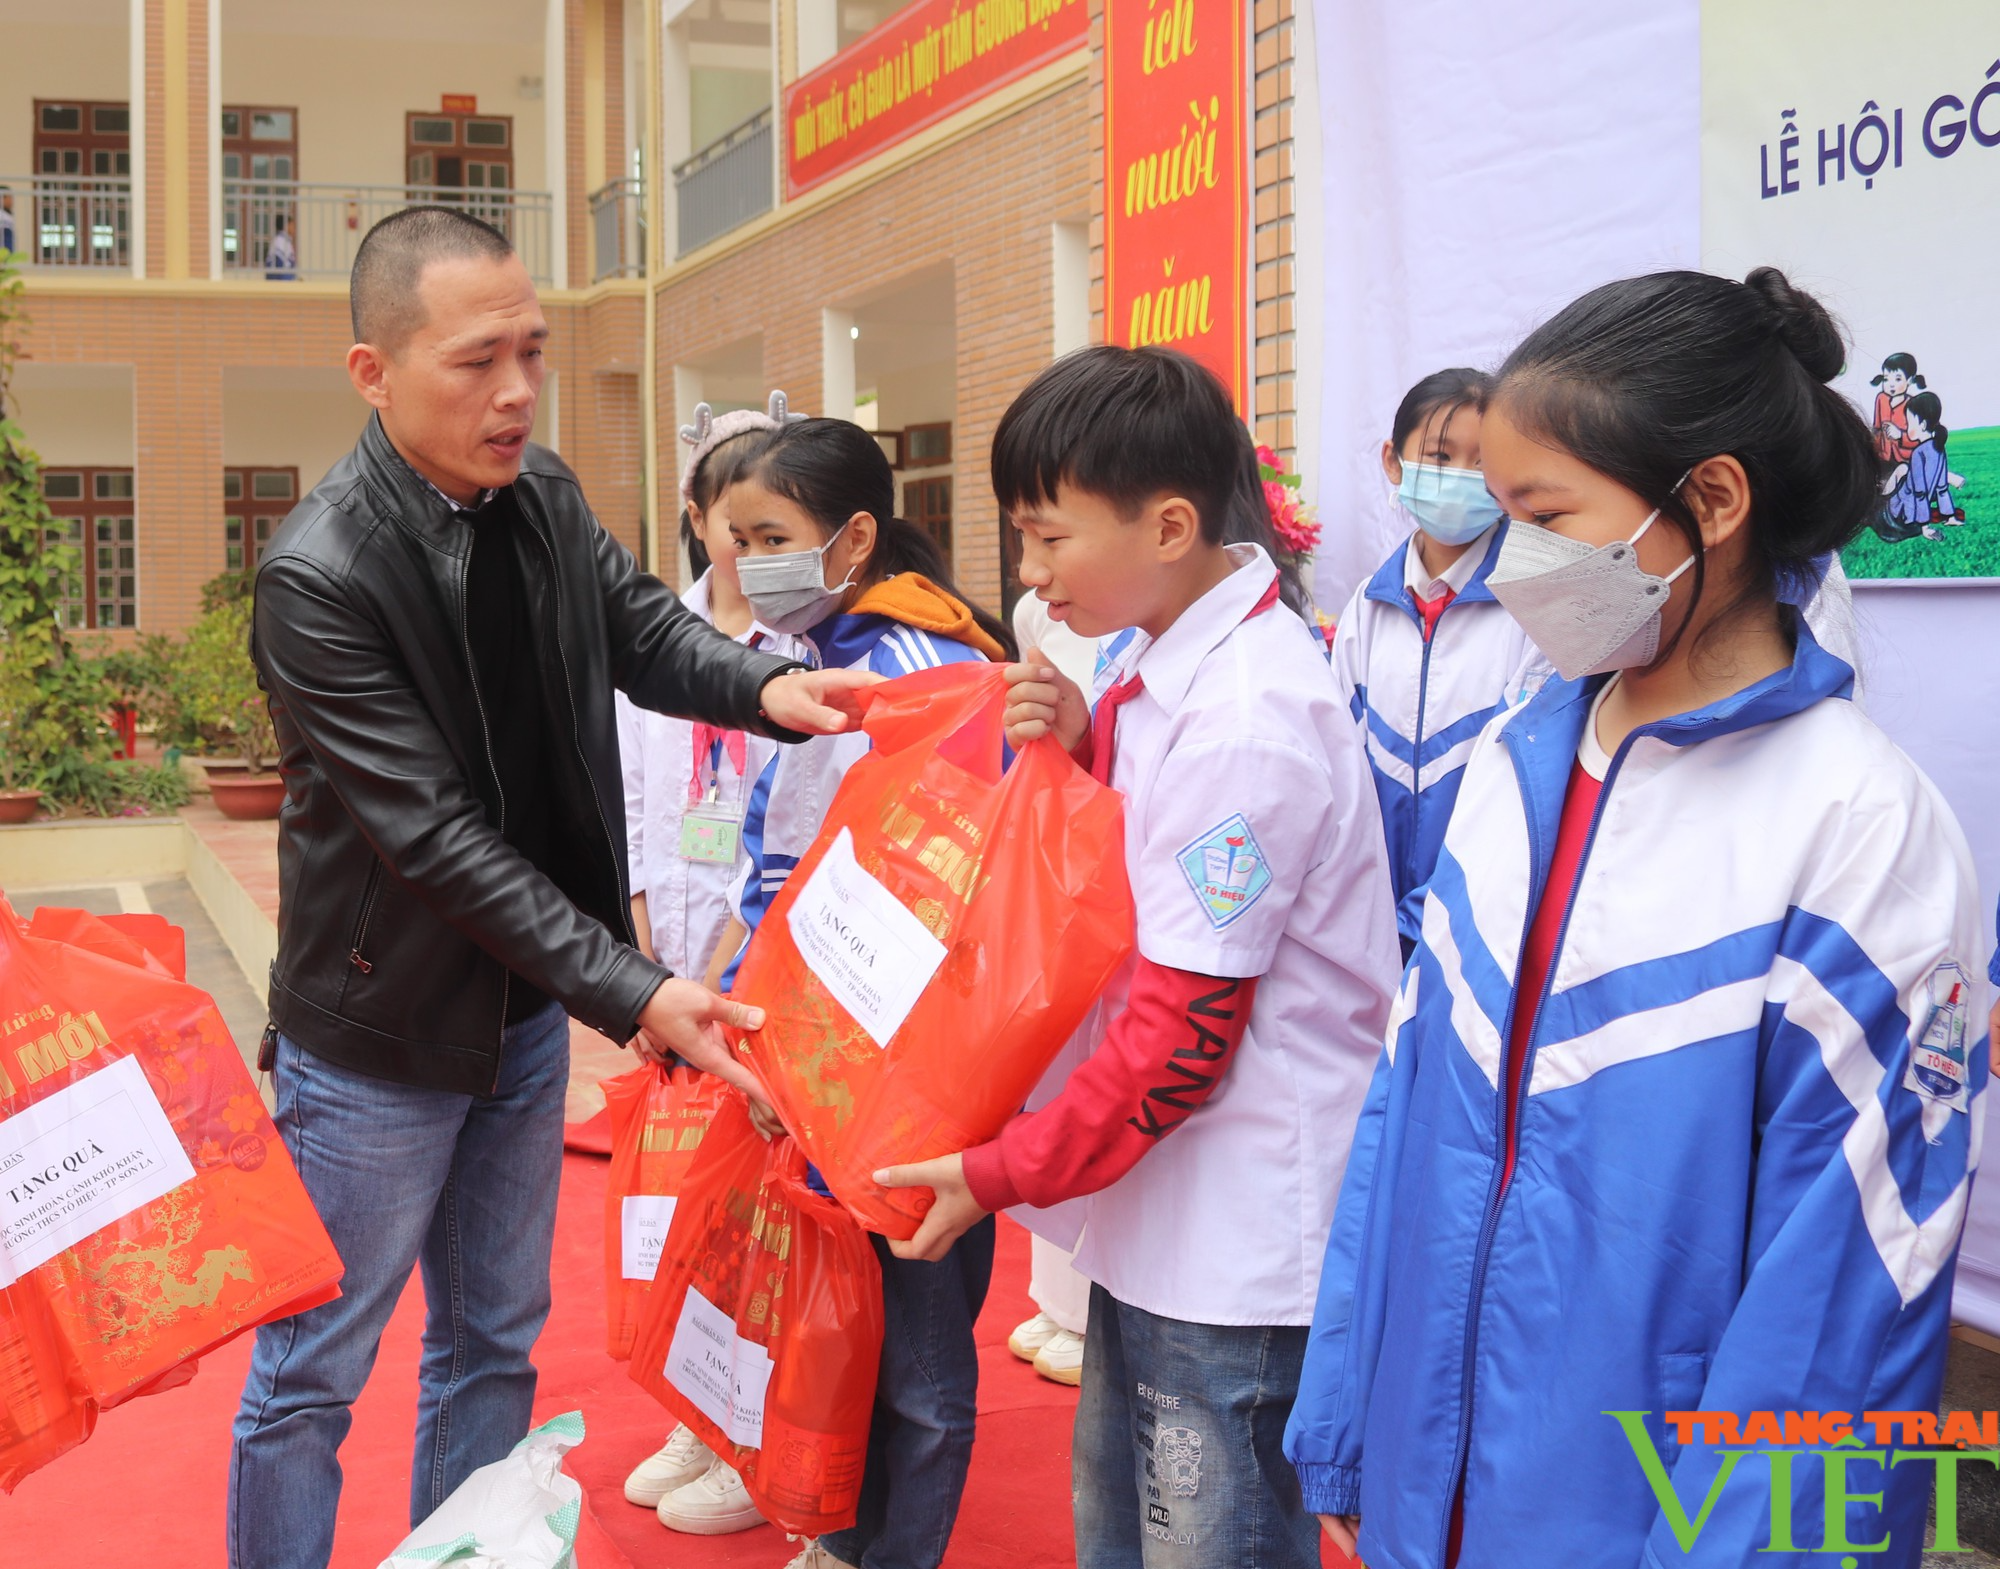 Báo Nhân Dân tặng quà Tết cho học sinh hoàn cảnh khó khăn ở Sơn La - Ảnh 2.